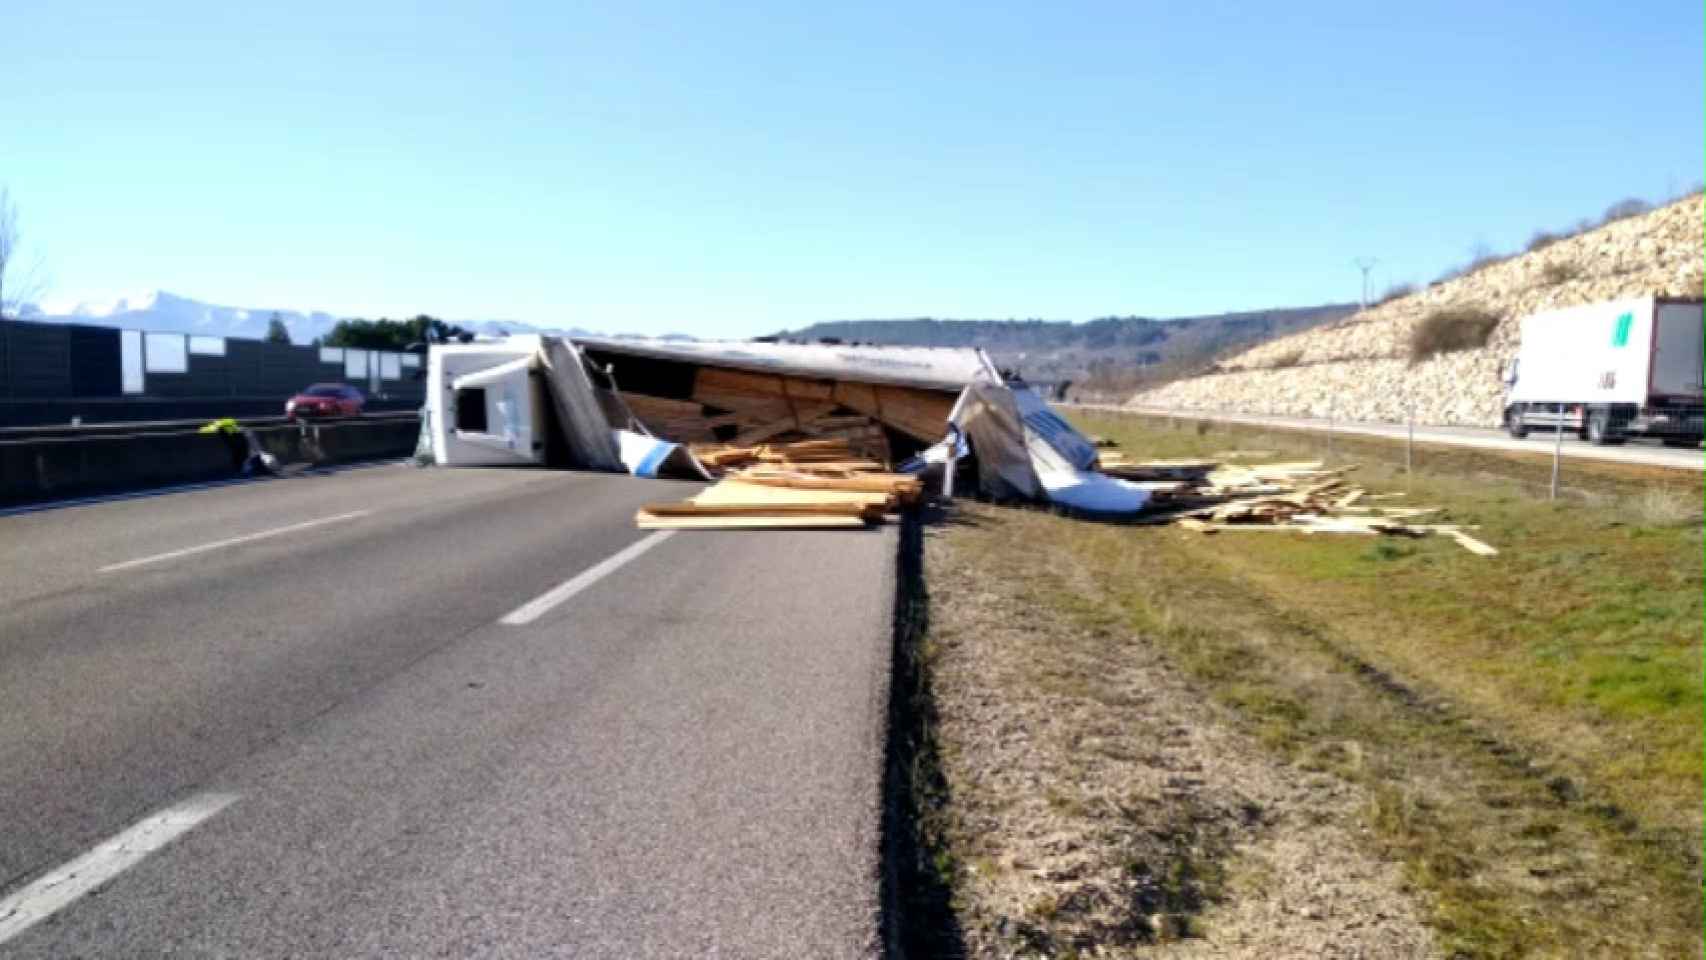 Vídeo del accidente de un camión en la A-6 en la provincia de León